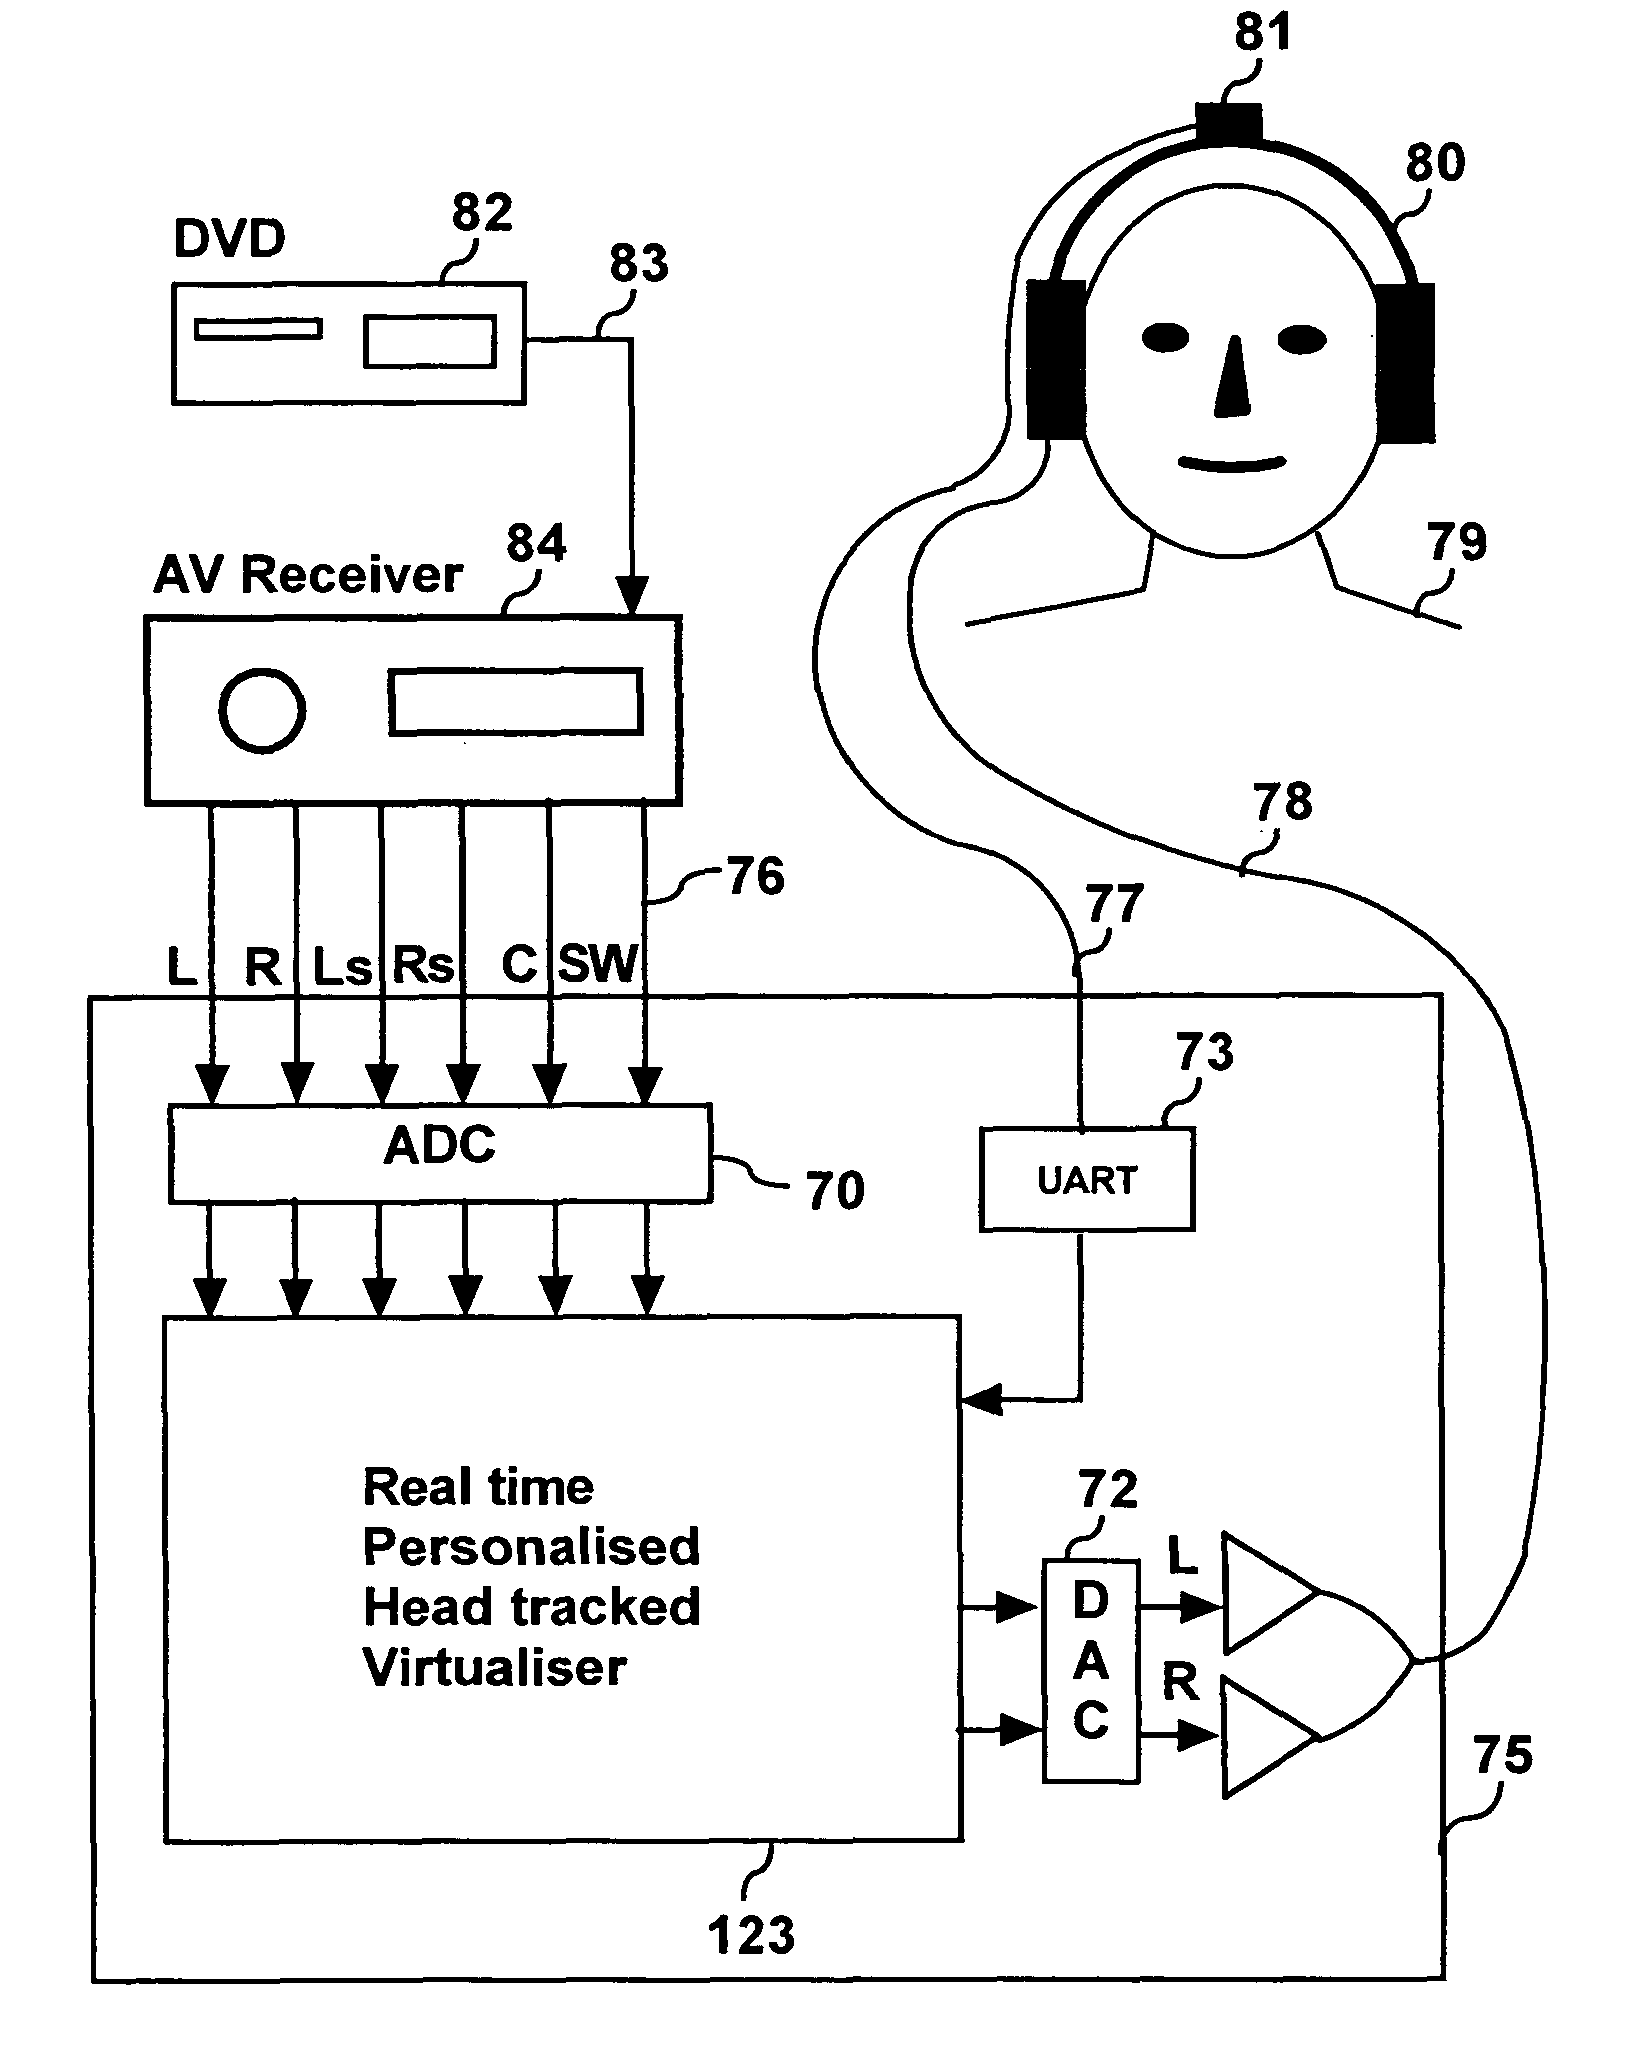 Personalized headphone virtualization